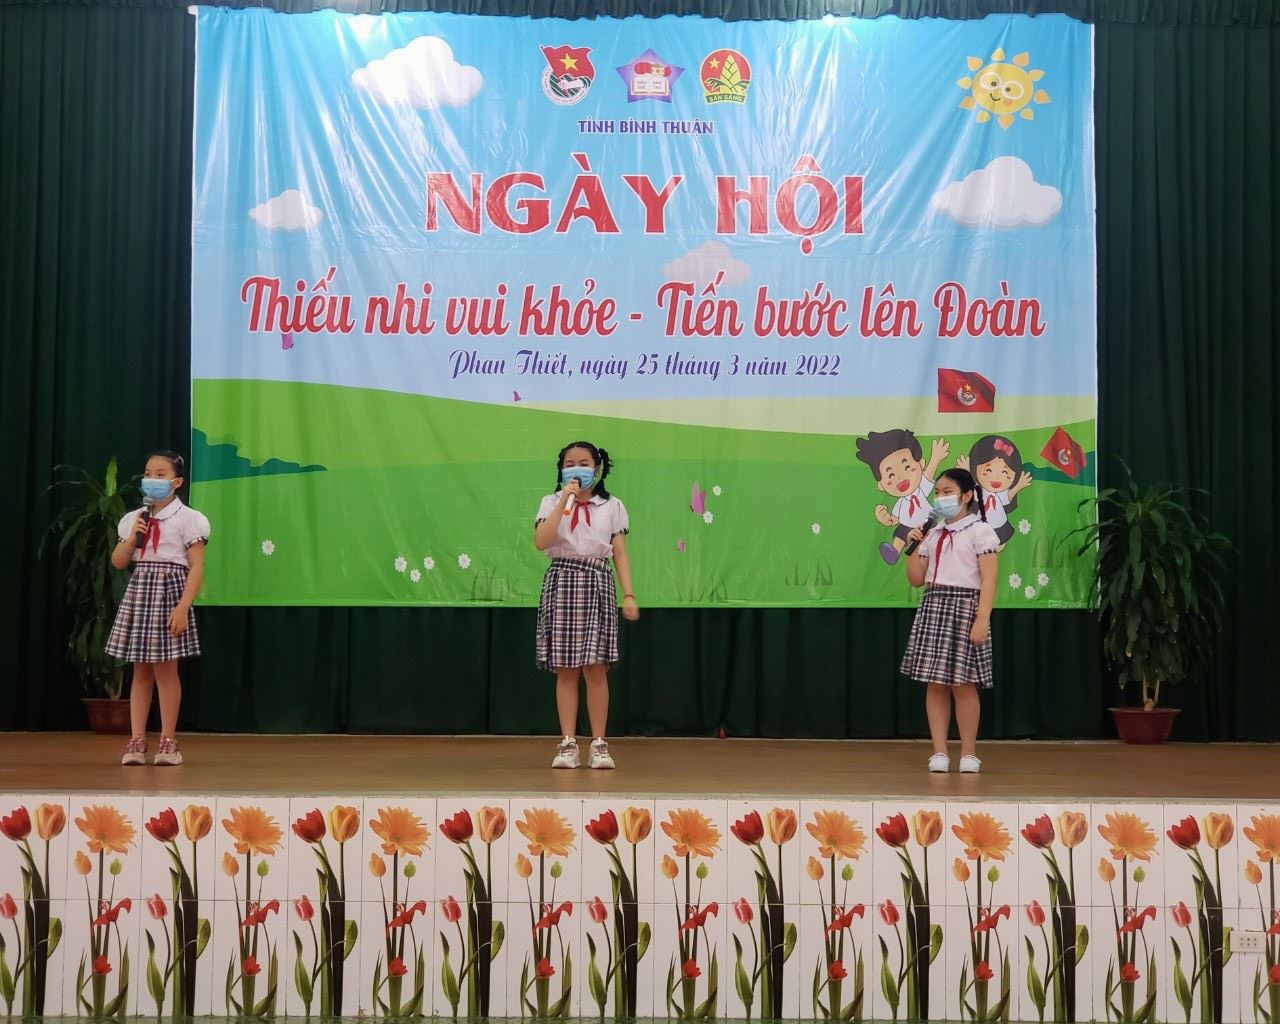 Thiếu nhi Bình Thuận sôi nổi tham gia Ngày hội “Thiếu nhi vui khỏe – Tiến bước lên Đoàn”